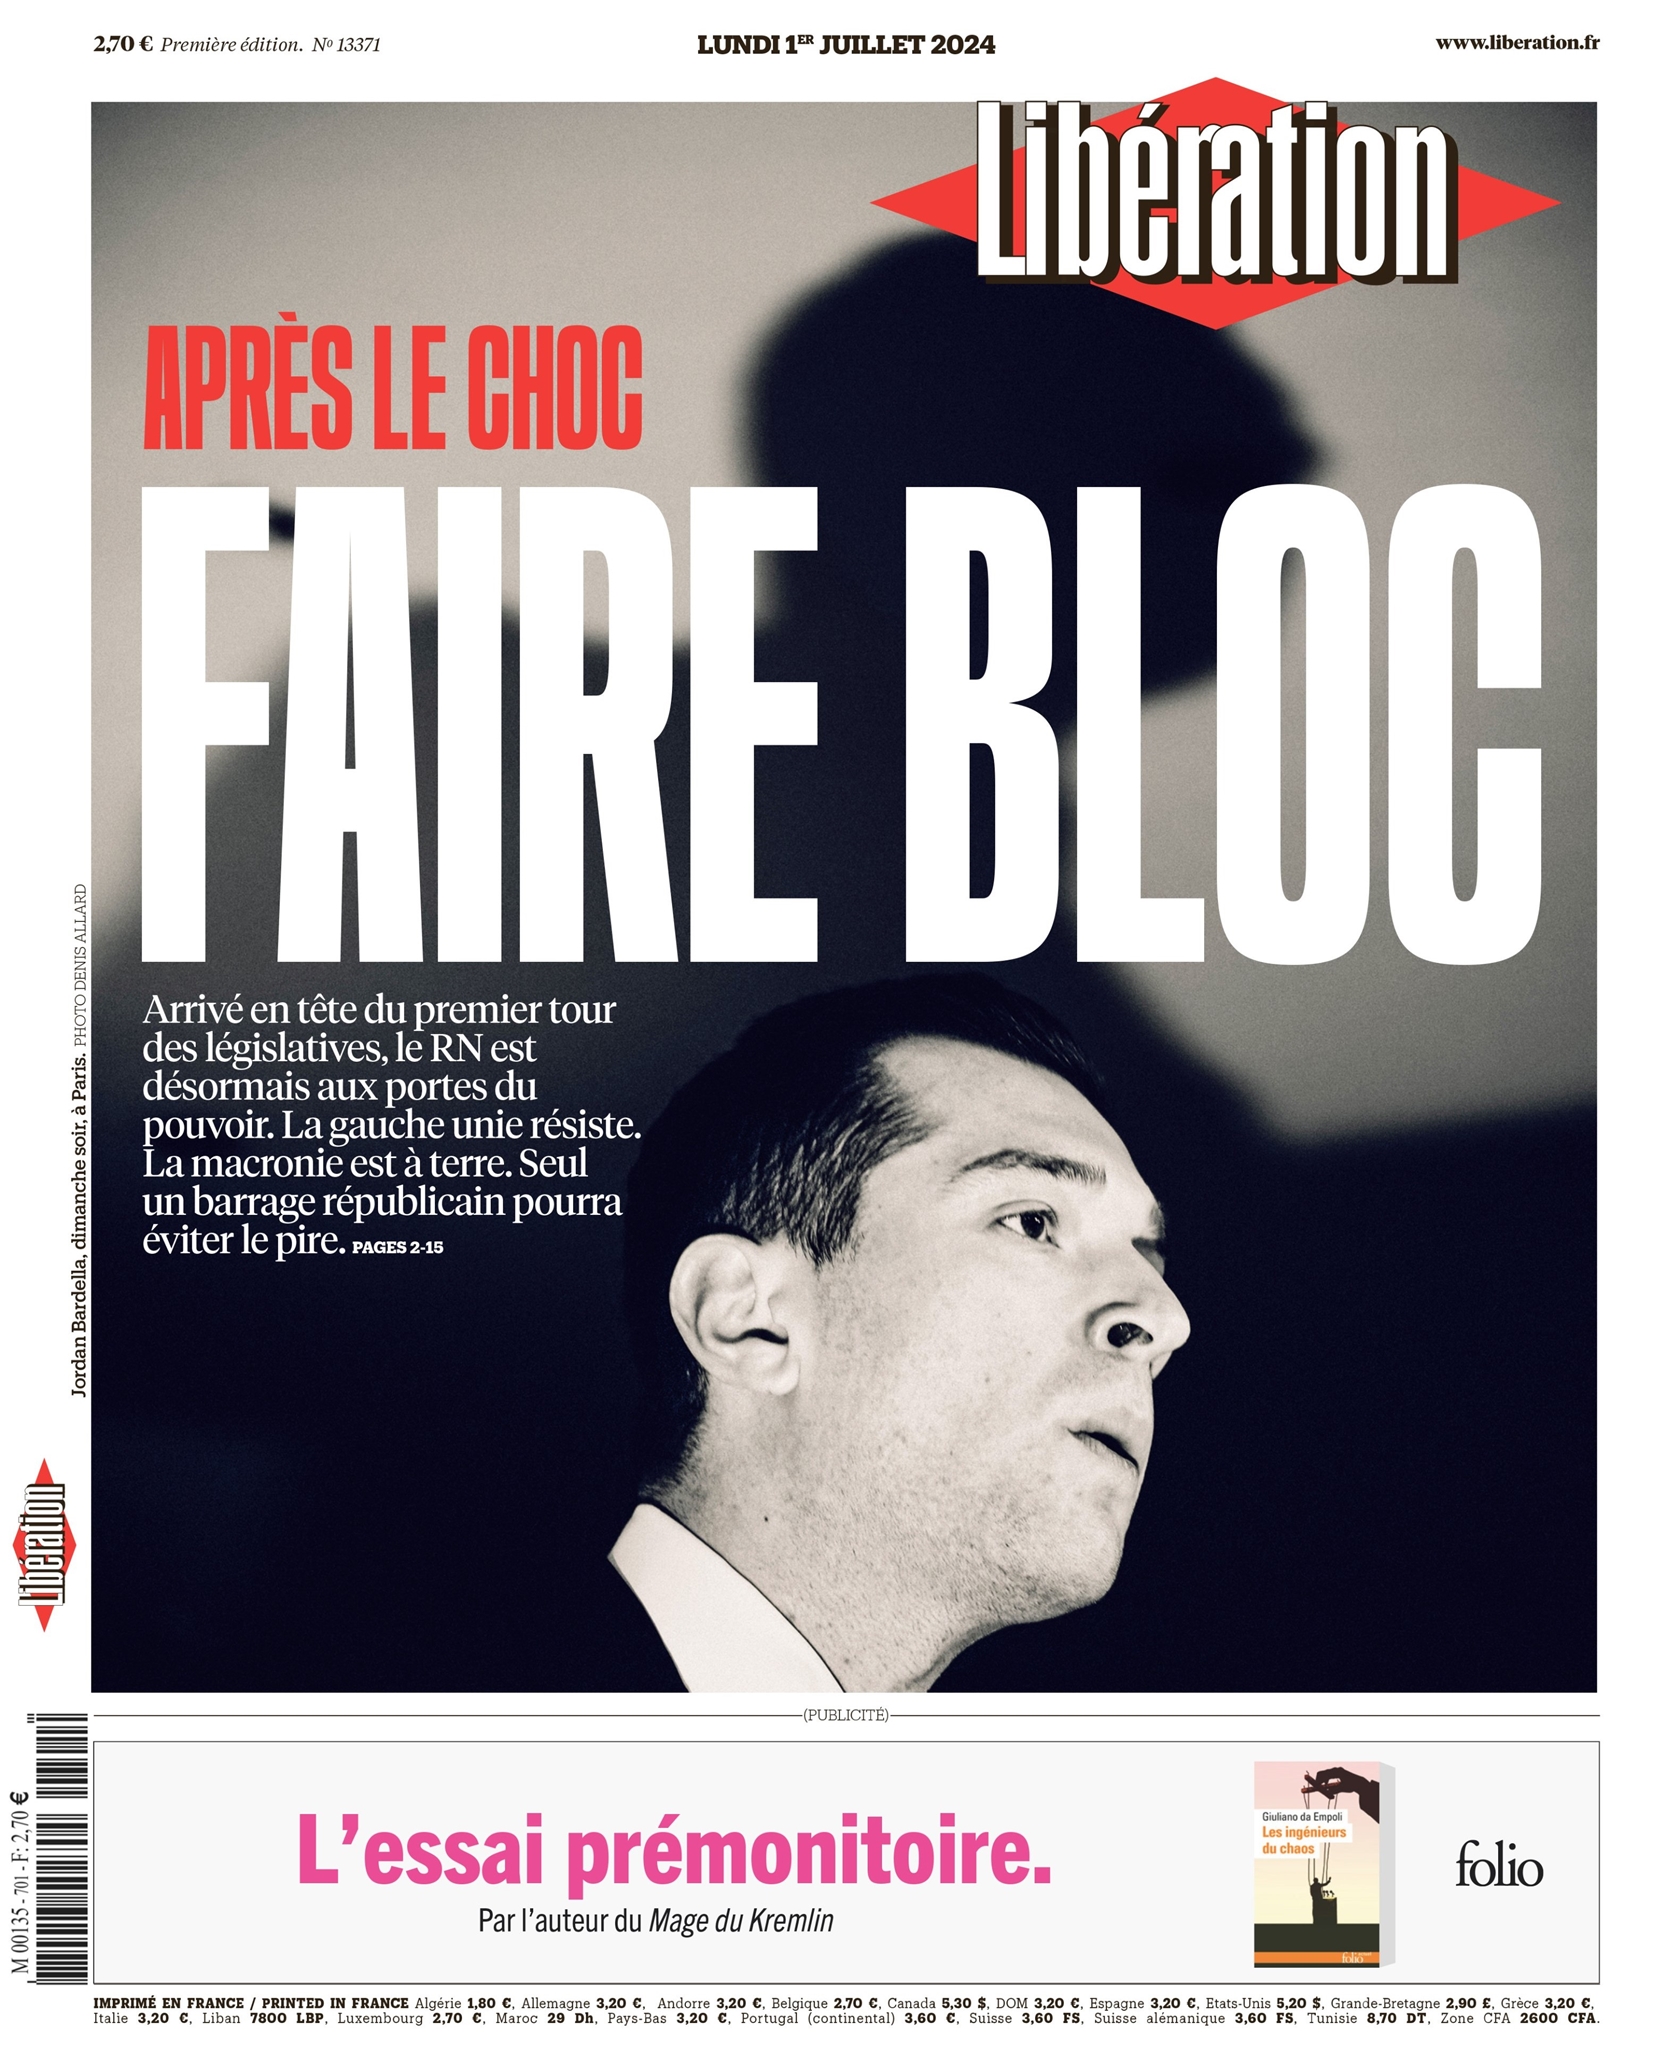 Βουλευτικές εκλογές - Γαλλία: Ο γαλλικός Τύπος μπροστά στο σοκ της νίκης της Λεπέν: 